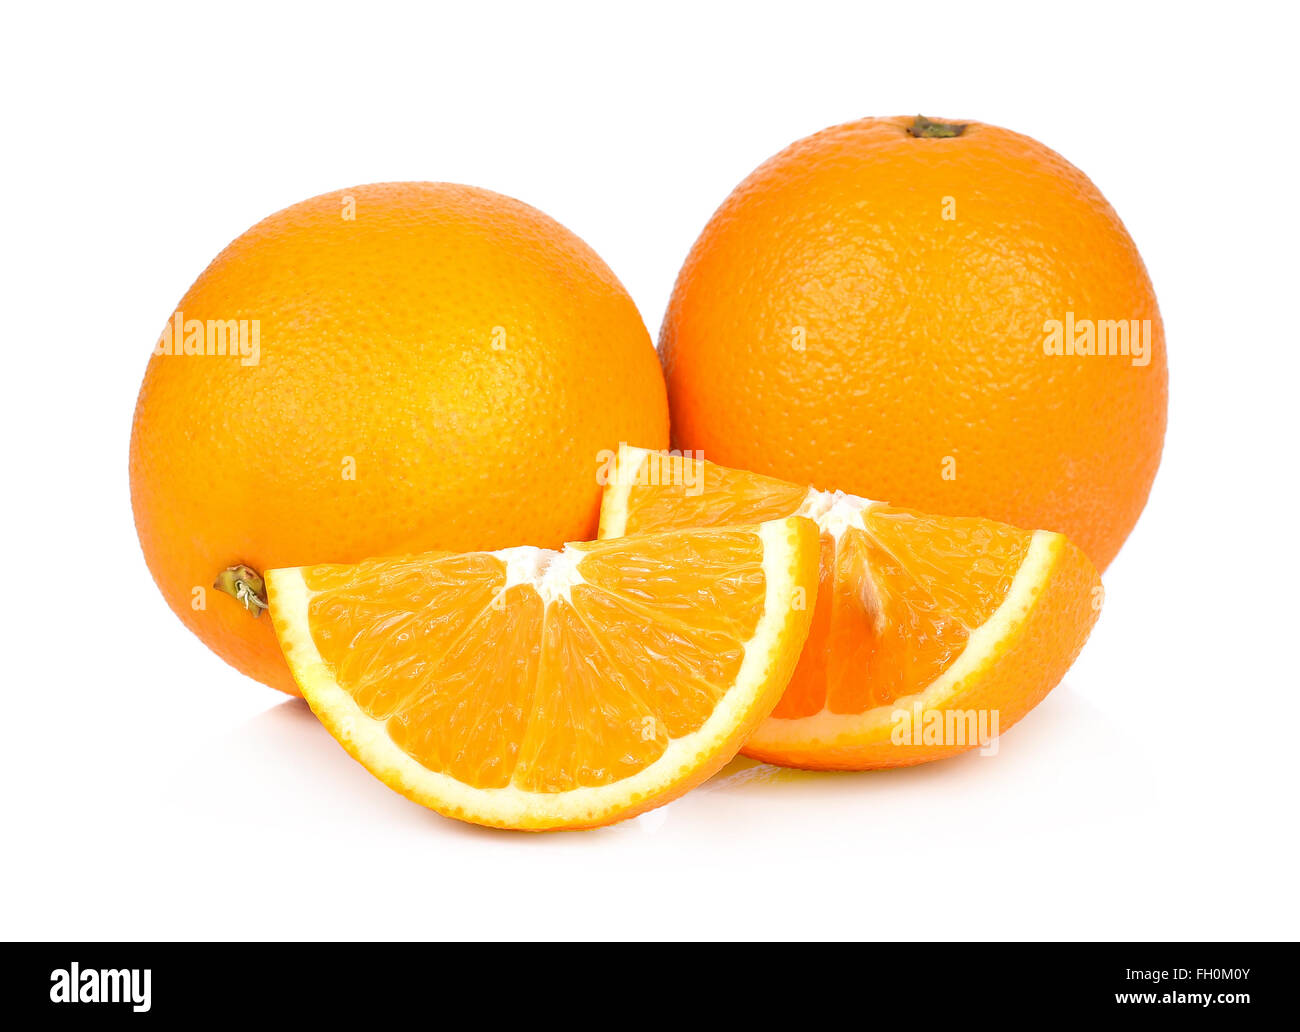 Sweet orange fruit on white background Stock Photo